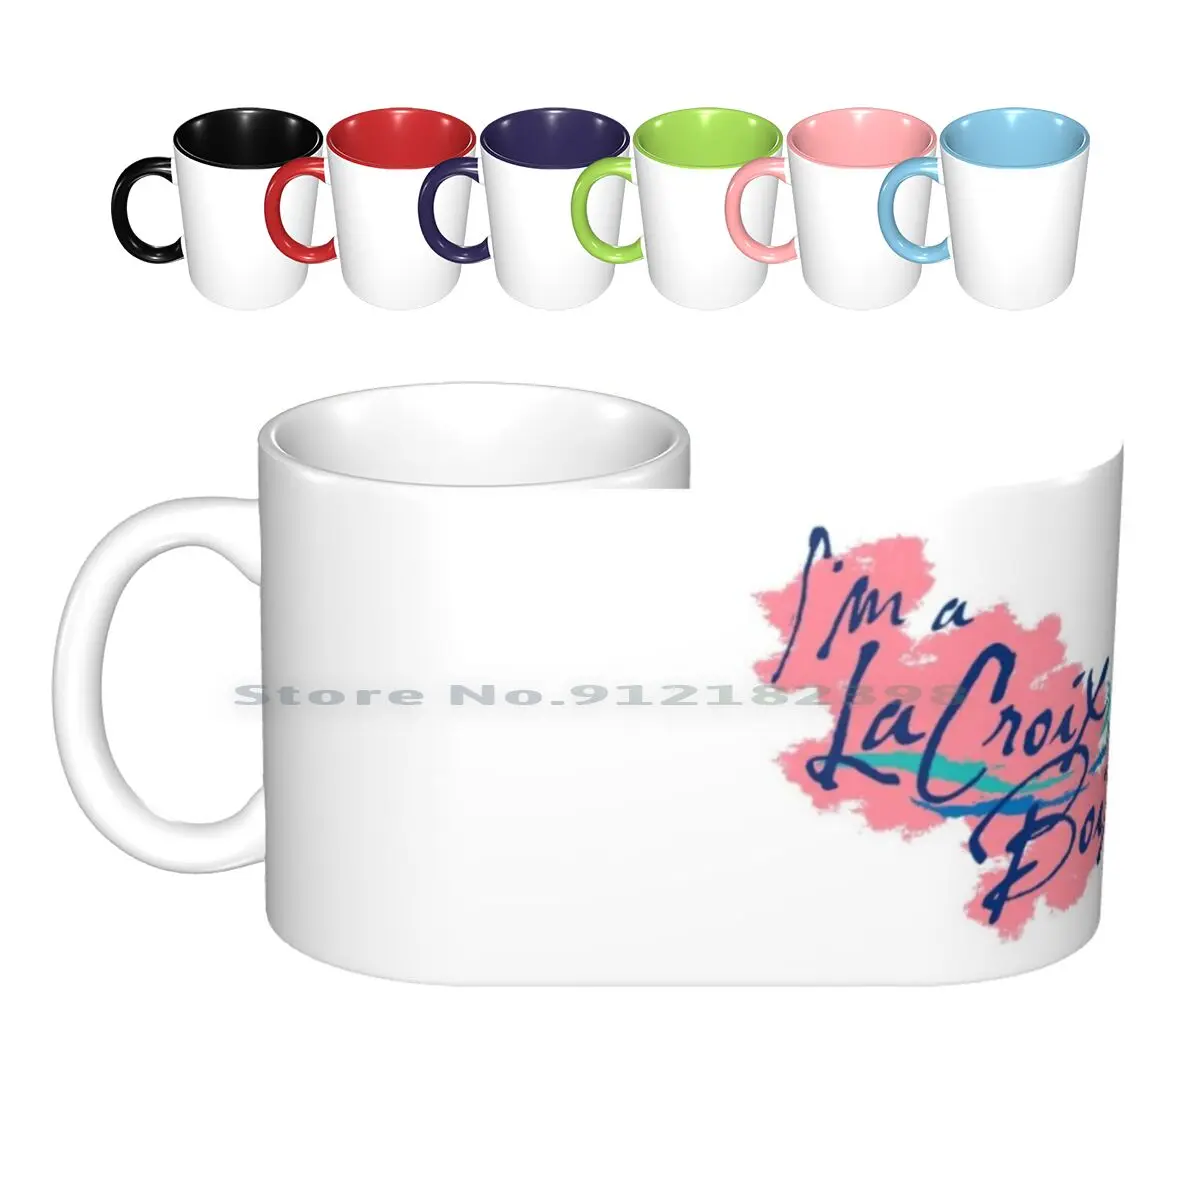 

Керамические кружки La крейсера бокс, кофейные чашки, Кружка для молока и чая, кружка с блестящей водой, эстетическая кружка бои в стиле 90-х, к...